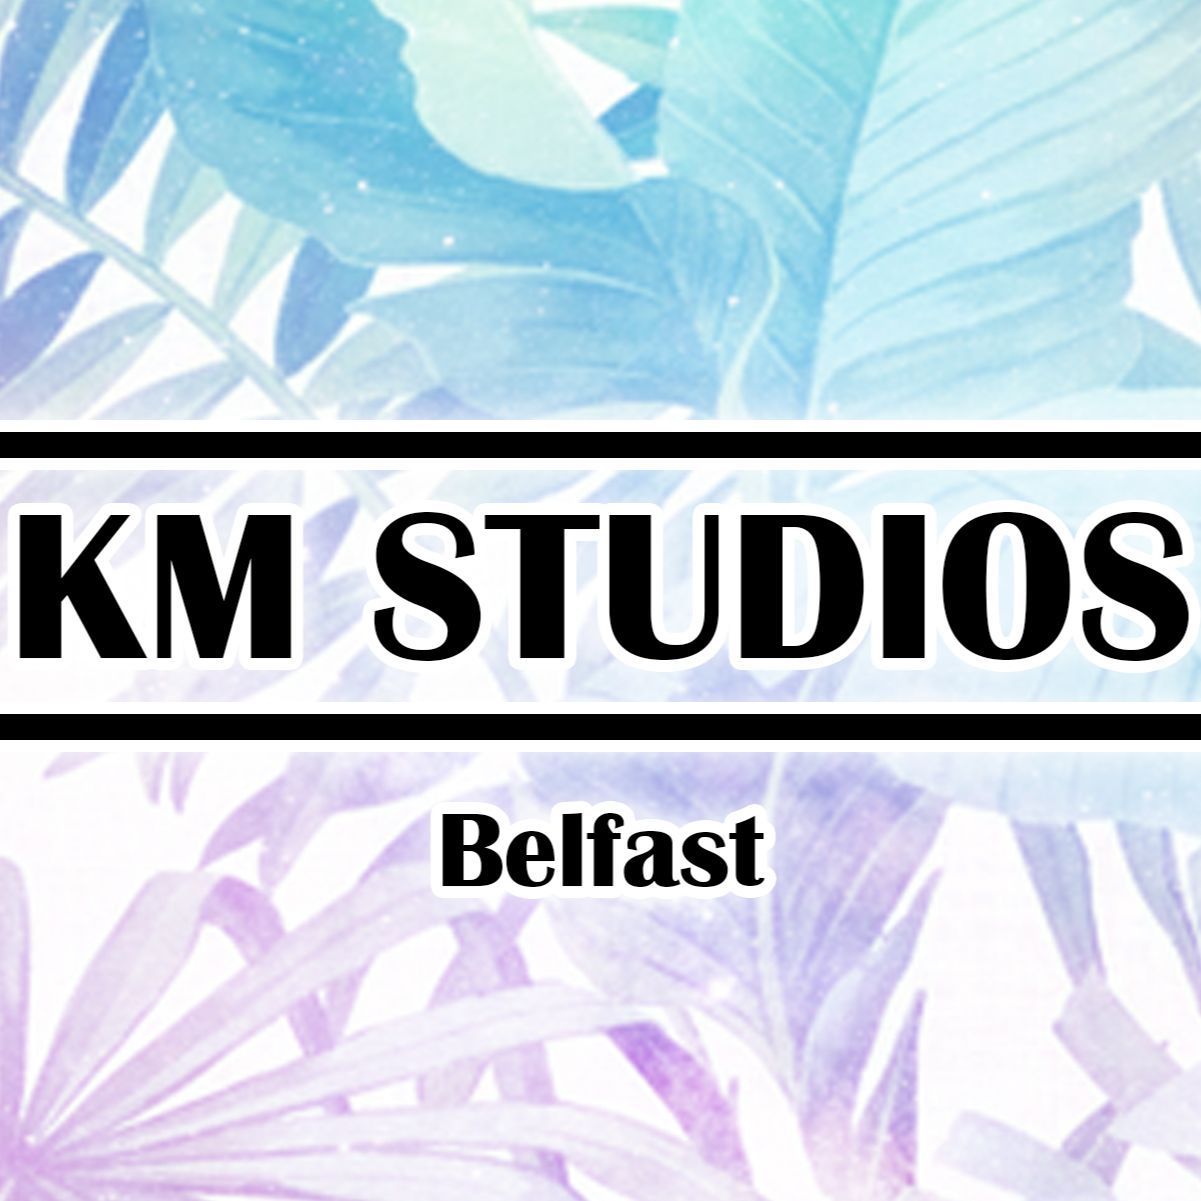 KMStudios Belfast, 109 York Road, BT15 3HF, Belfast